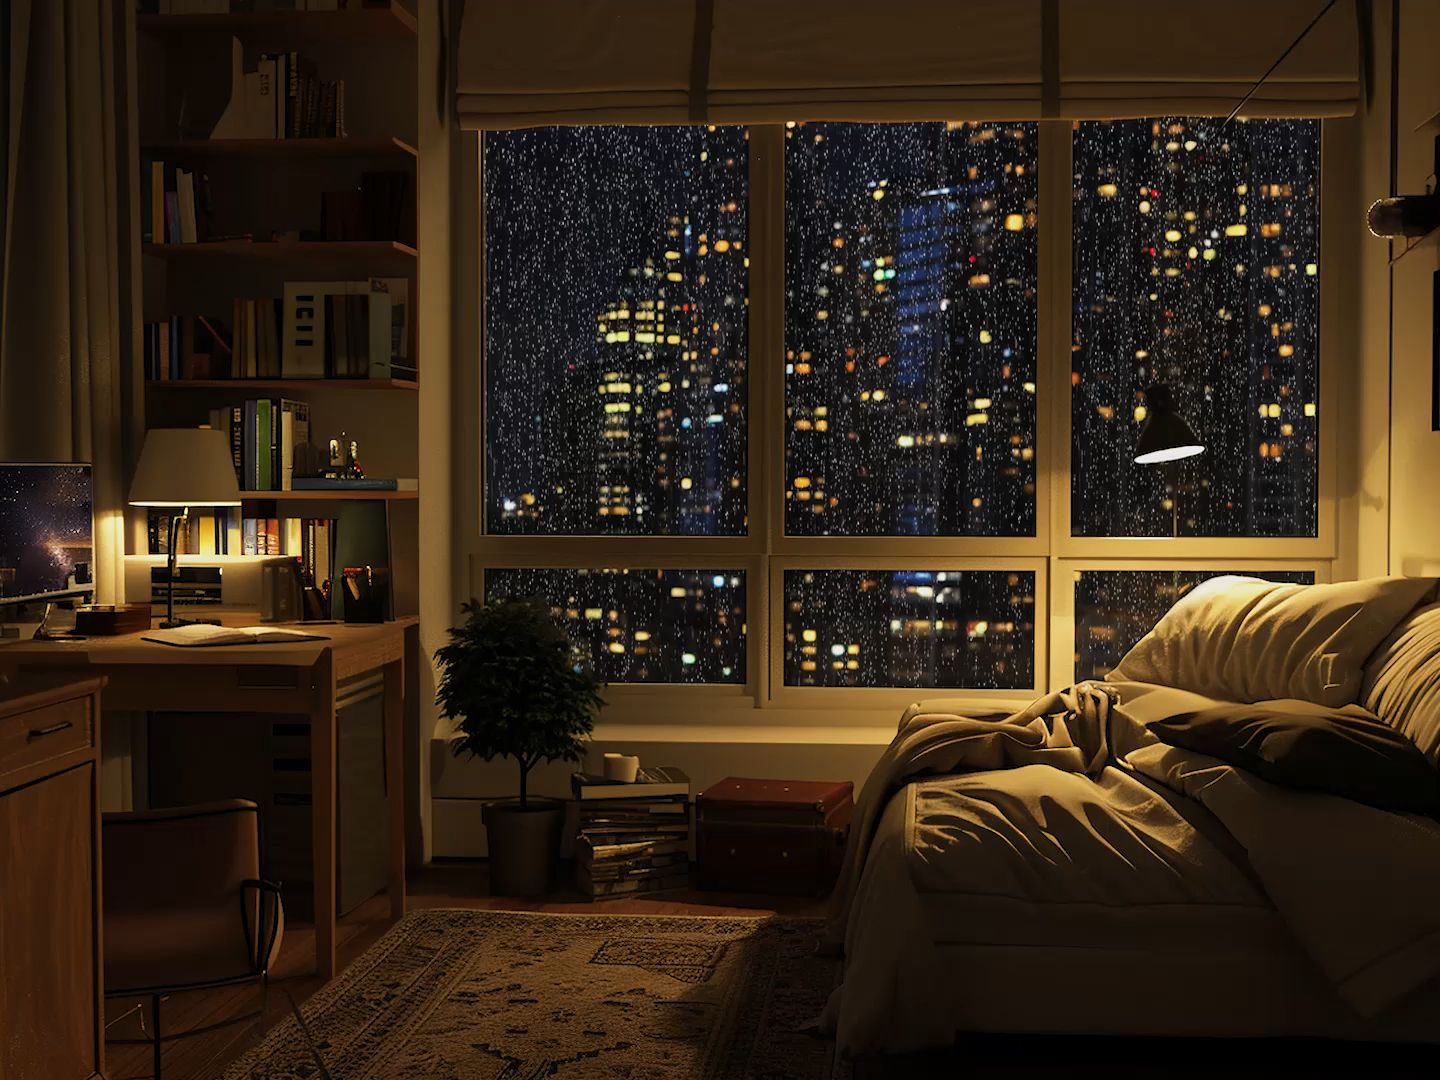 夜晚的温馨卧室丨晚上窝在舒服的大沙发里看着窗外的高楼夜景听雨助眠